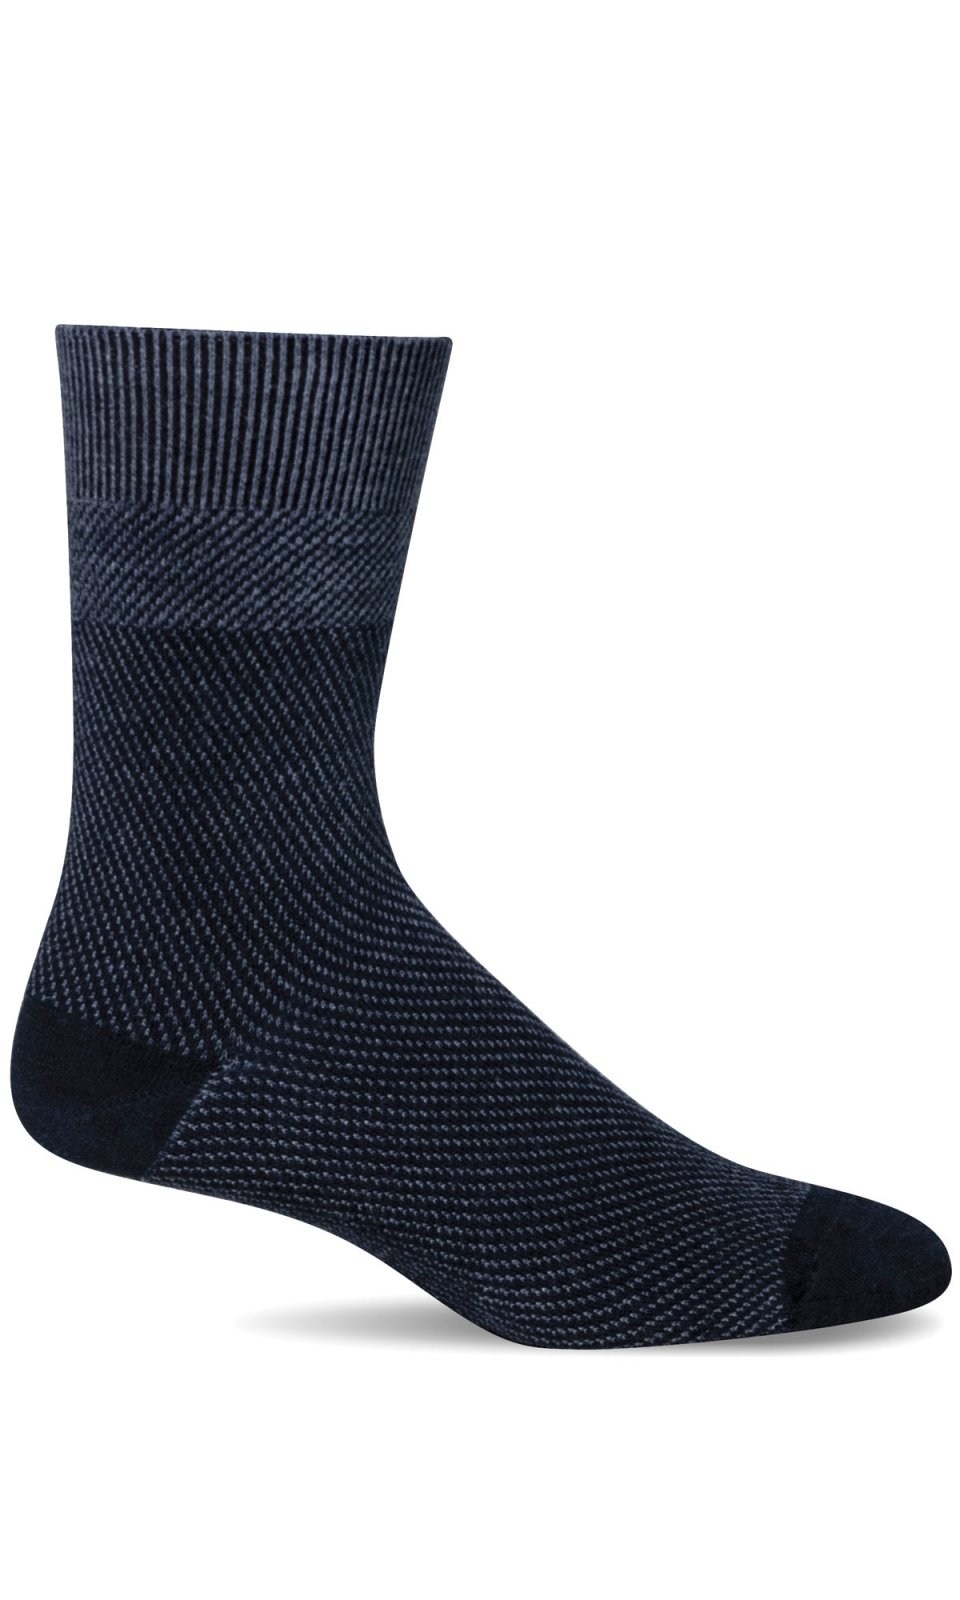 Men's Zig | Essential Comfort Socks - Merino Wool Essential Comfort - Sockwell